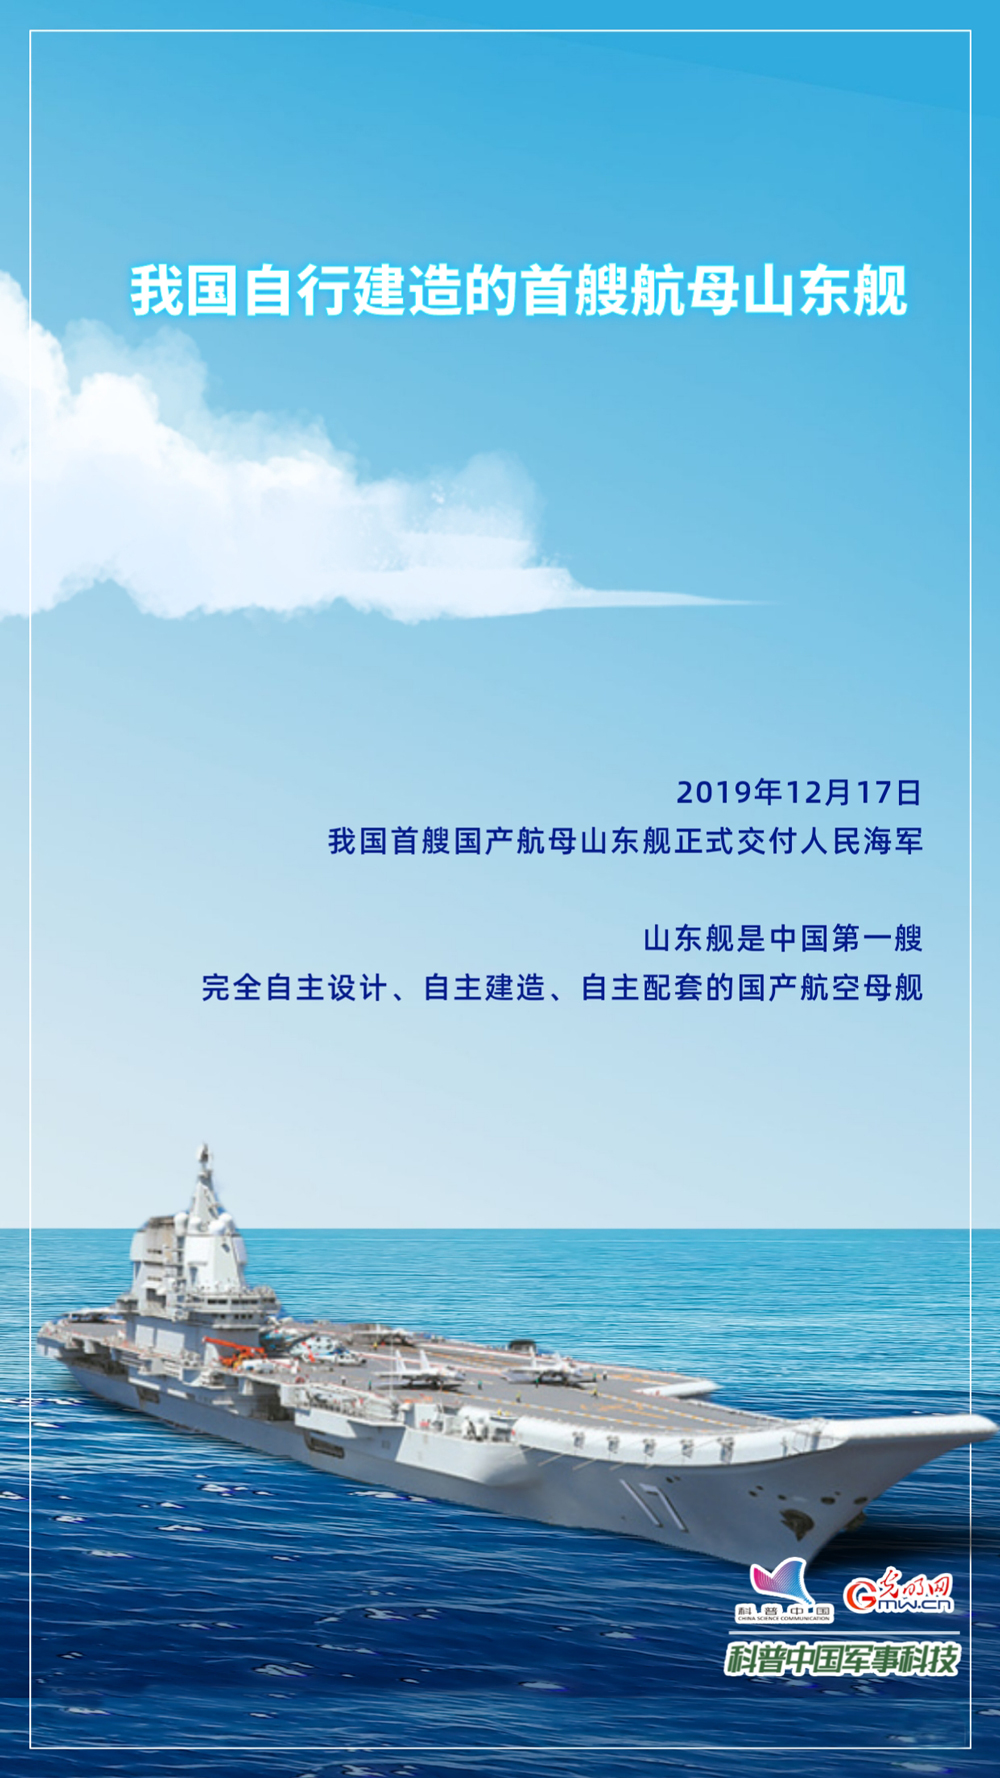 纪念人民海军74周年|回顾中国舰队跨越发展之路